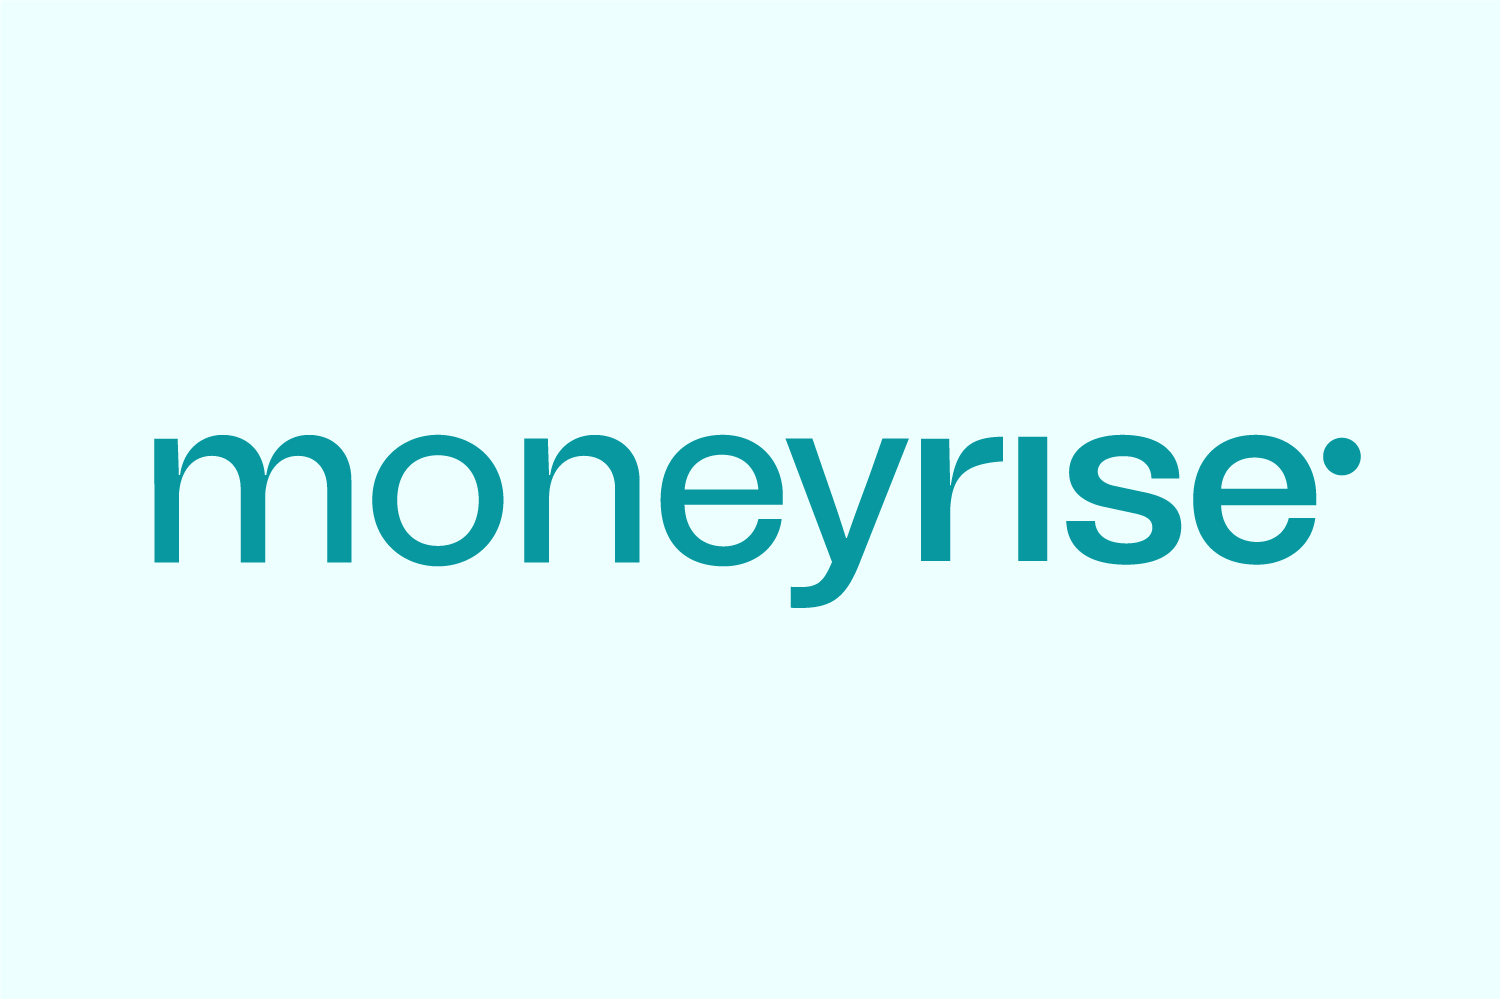 Case-Study-Products-moneyrise-150522-SB